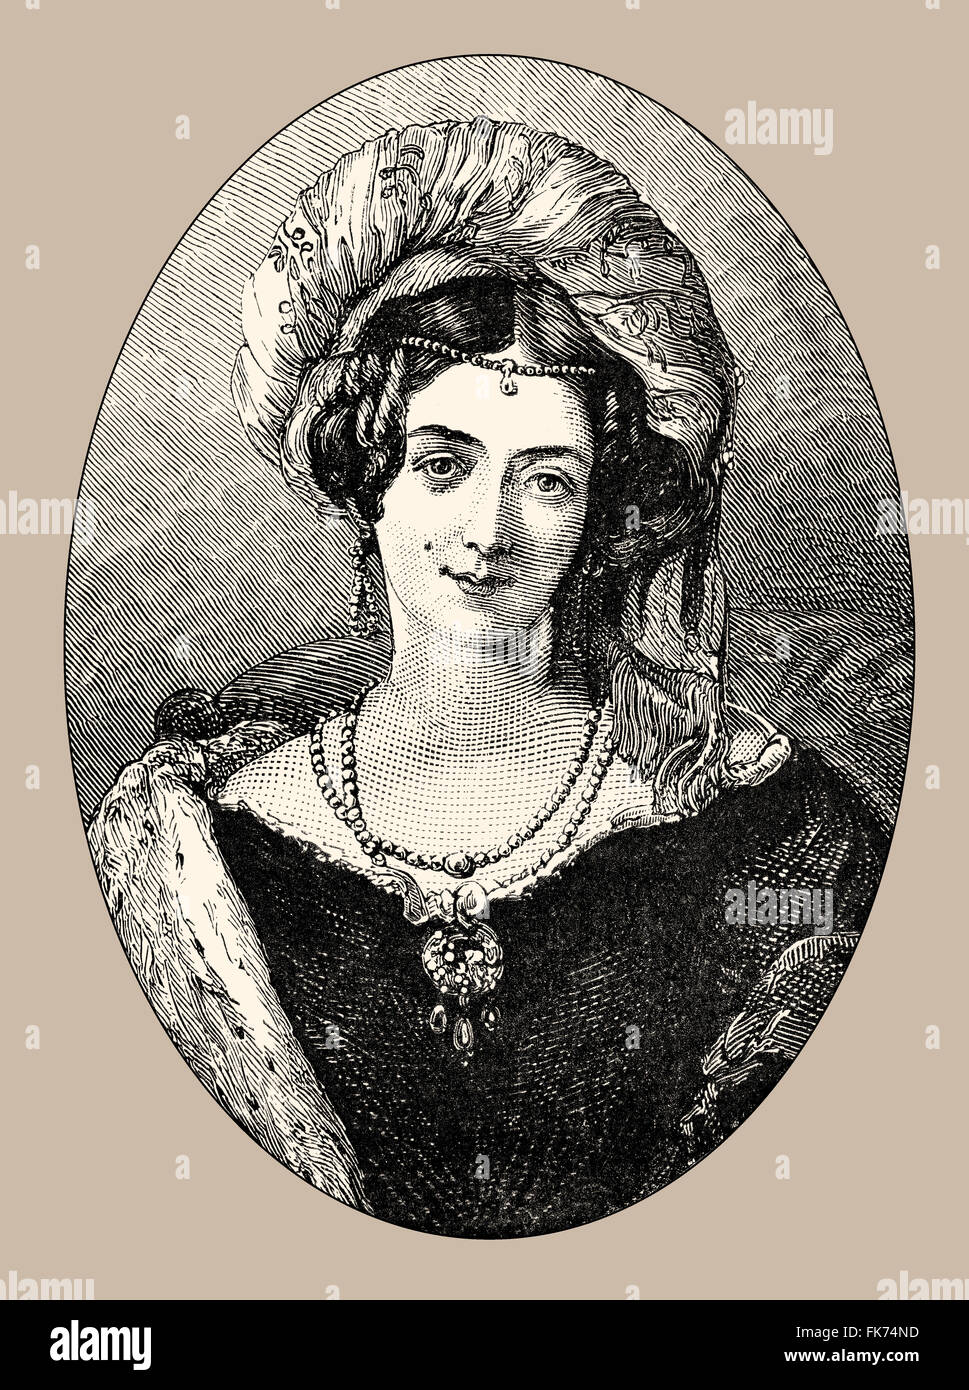 Marie Louise Victoria, princesse de Saxe-Cobourg-Saalfeld, duchesse de Kent ; 1786-1861, une princesse allemande et la mère de la Reine Vi Banque D'Images